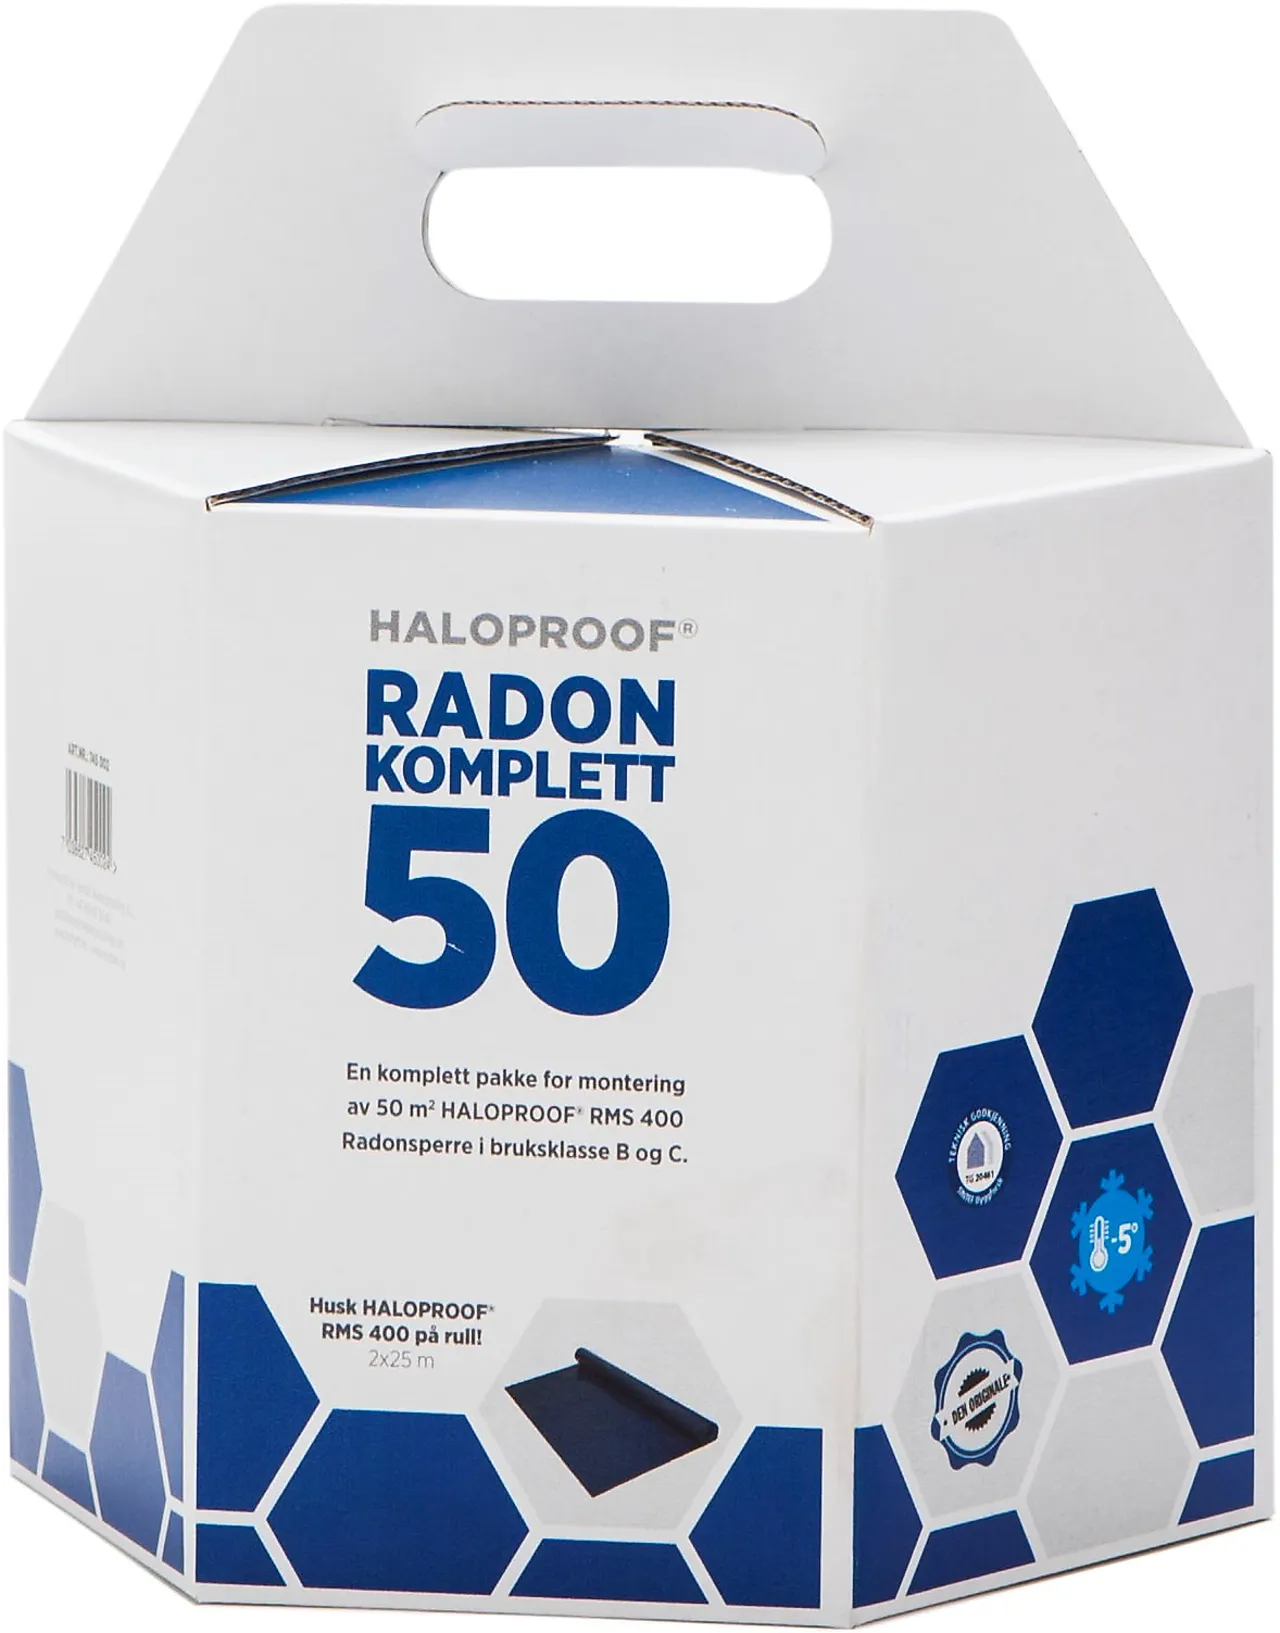 Radon komplett 50 haloproof mataki